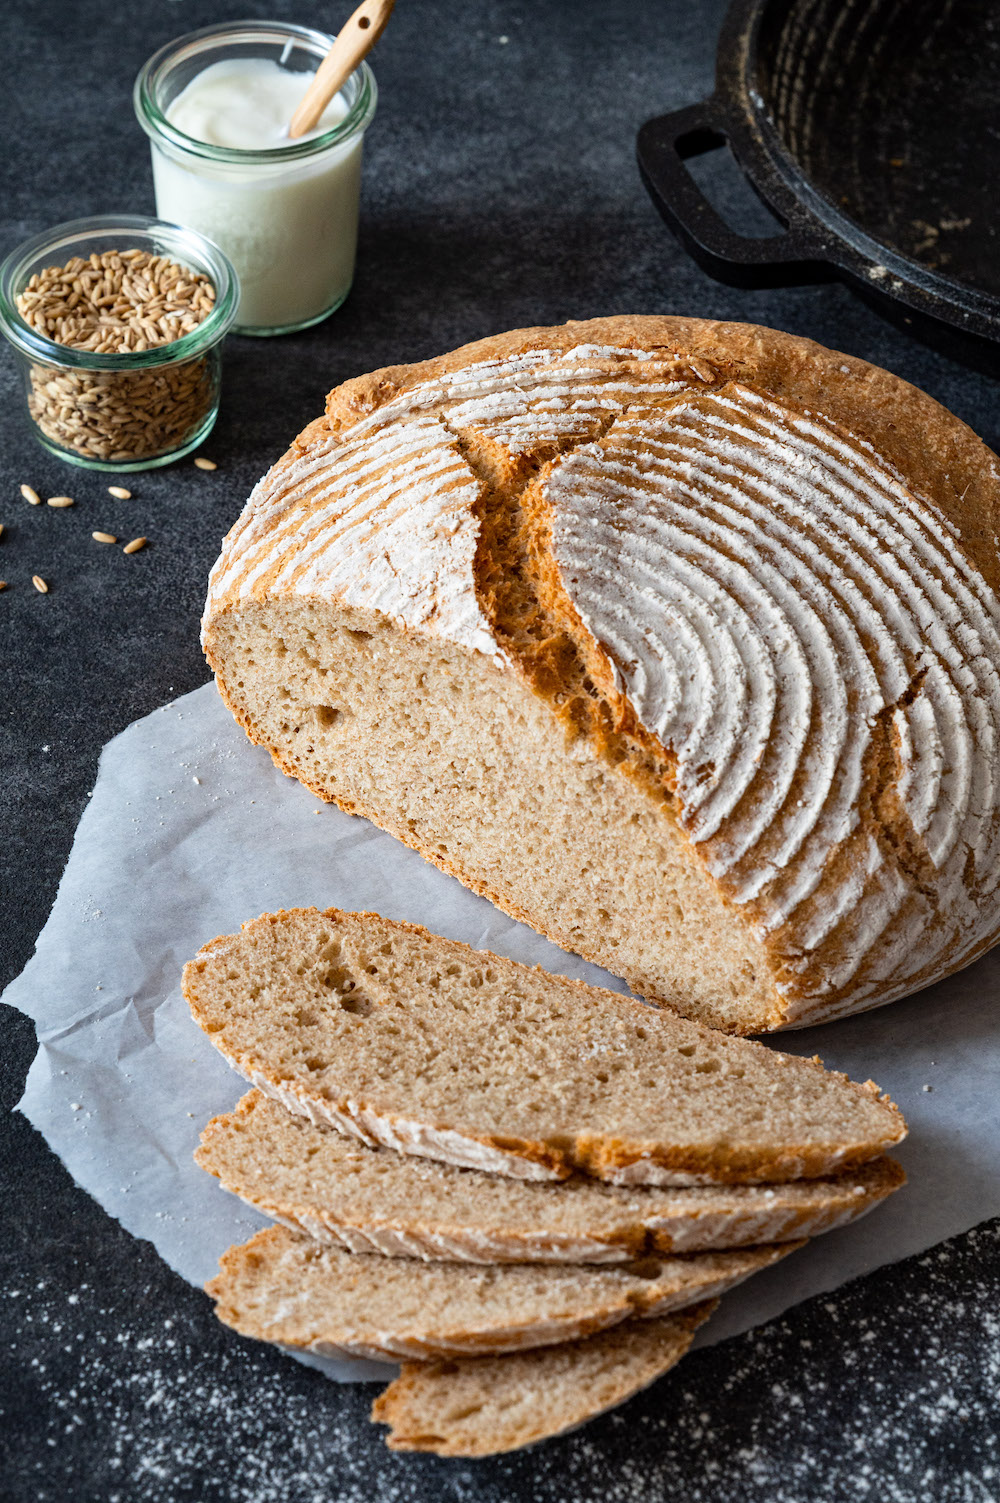 Joghurt-Dinkel-Brot mit Kruste auf dunklem Untergrund. Vier Scheiben sind vom Laib abgeschnitten und liegen aufgefächert vor dem Brot.